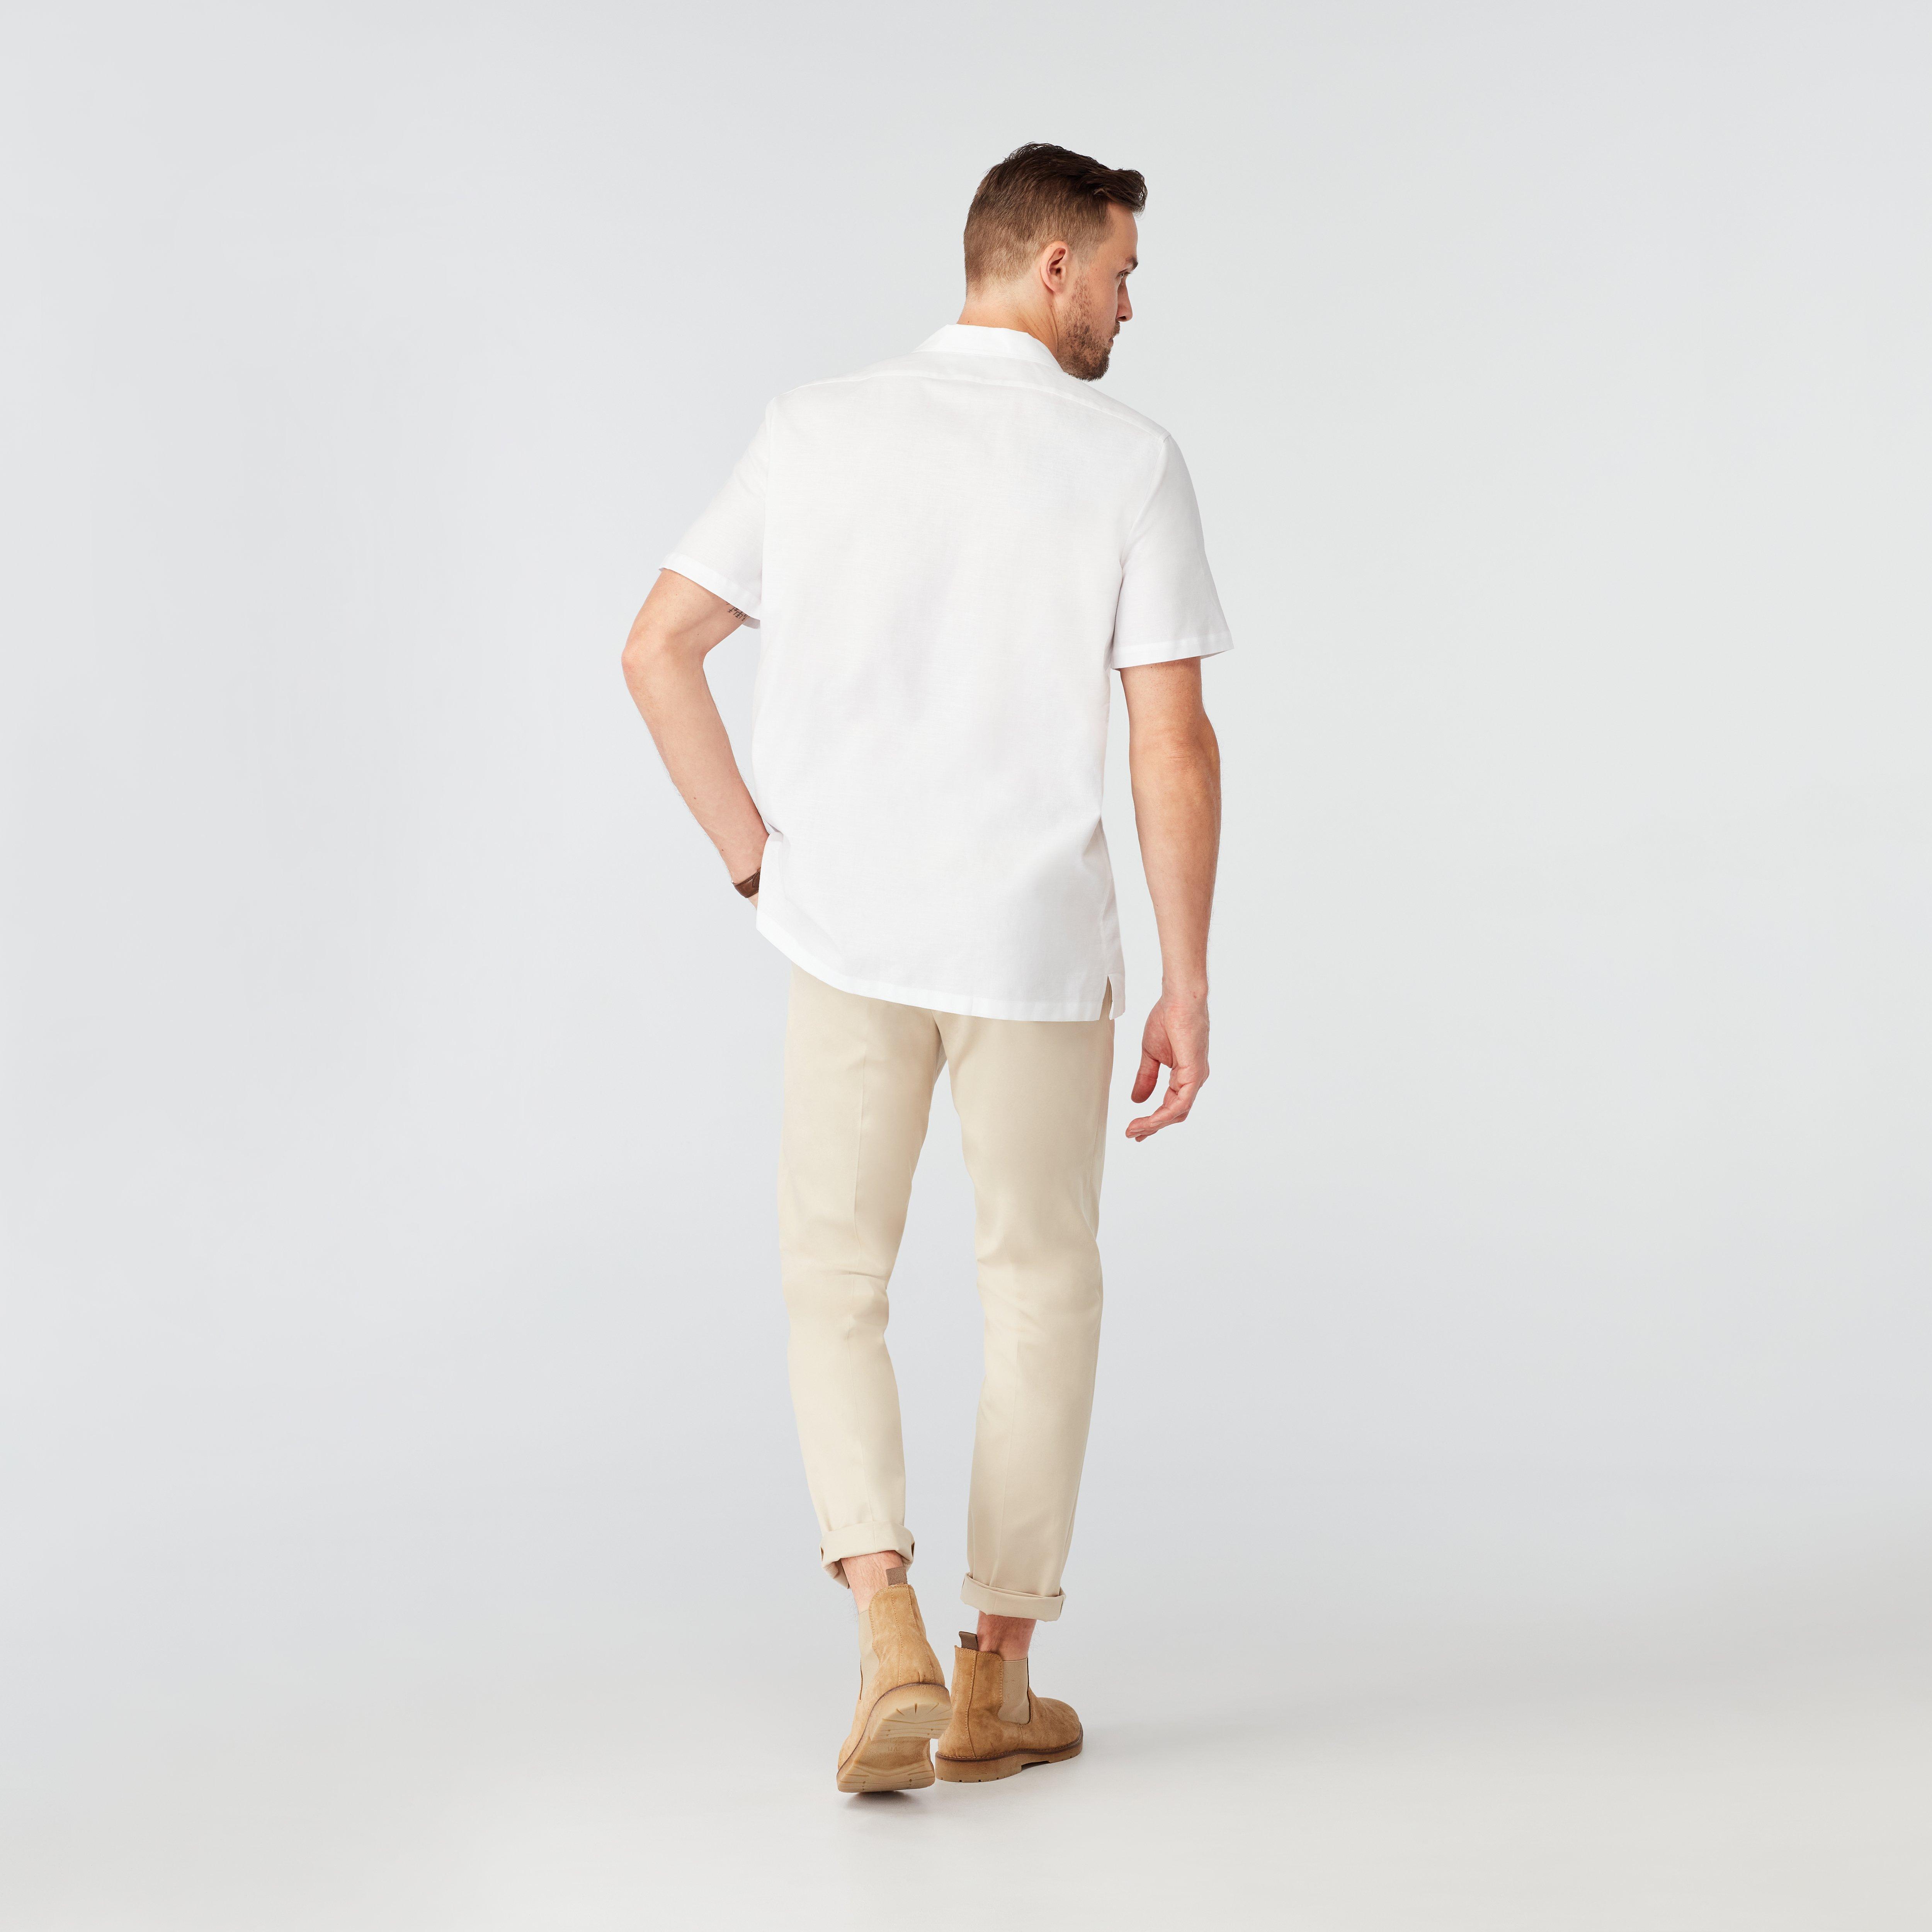 Sudbury Cotton Linen White Camp Shirt